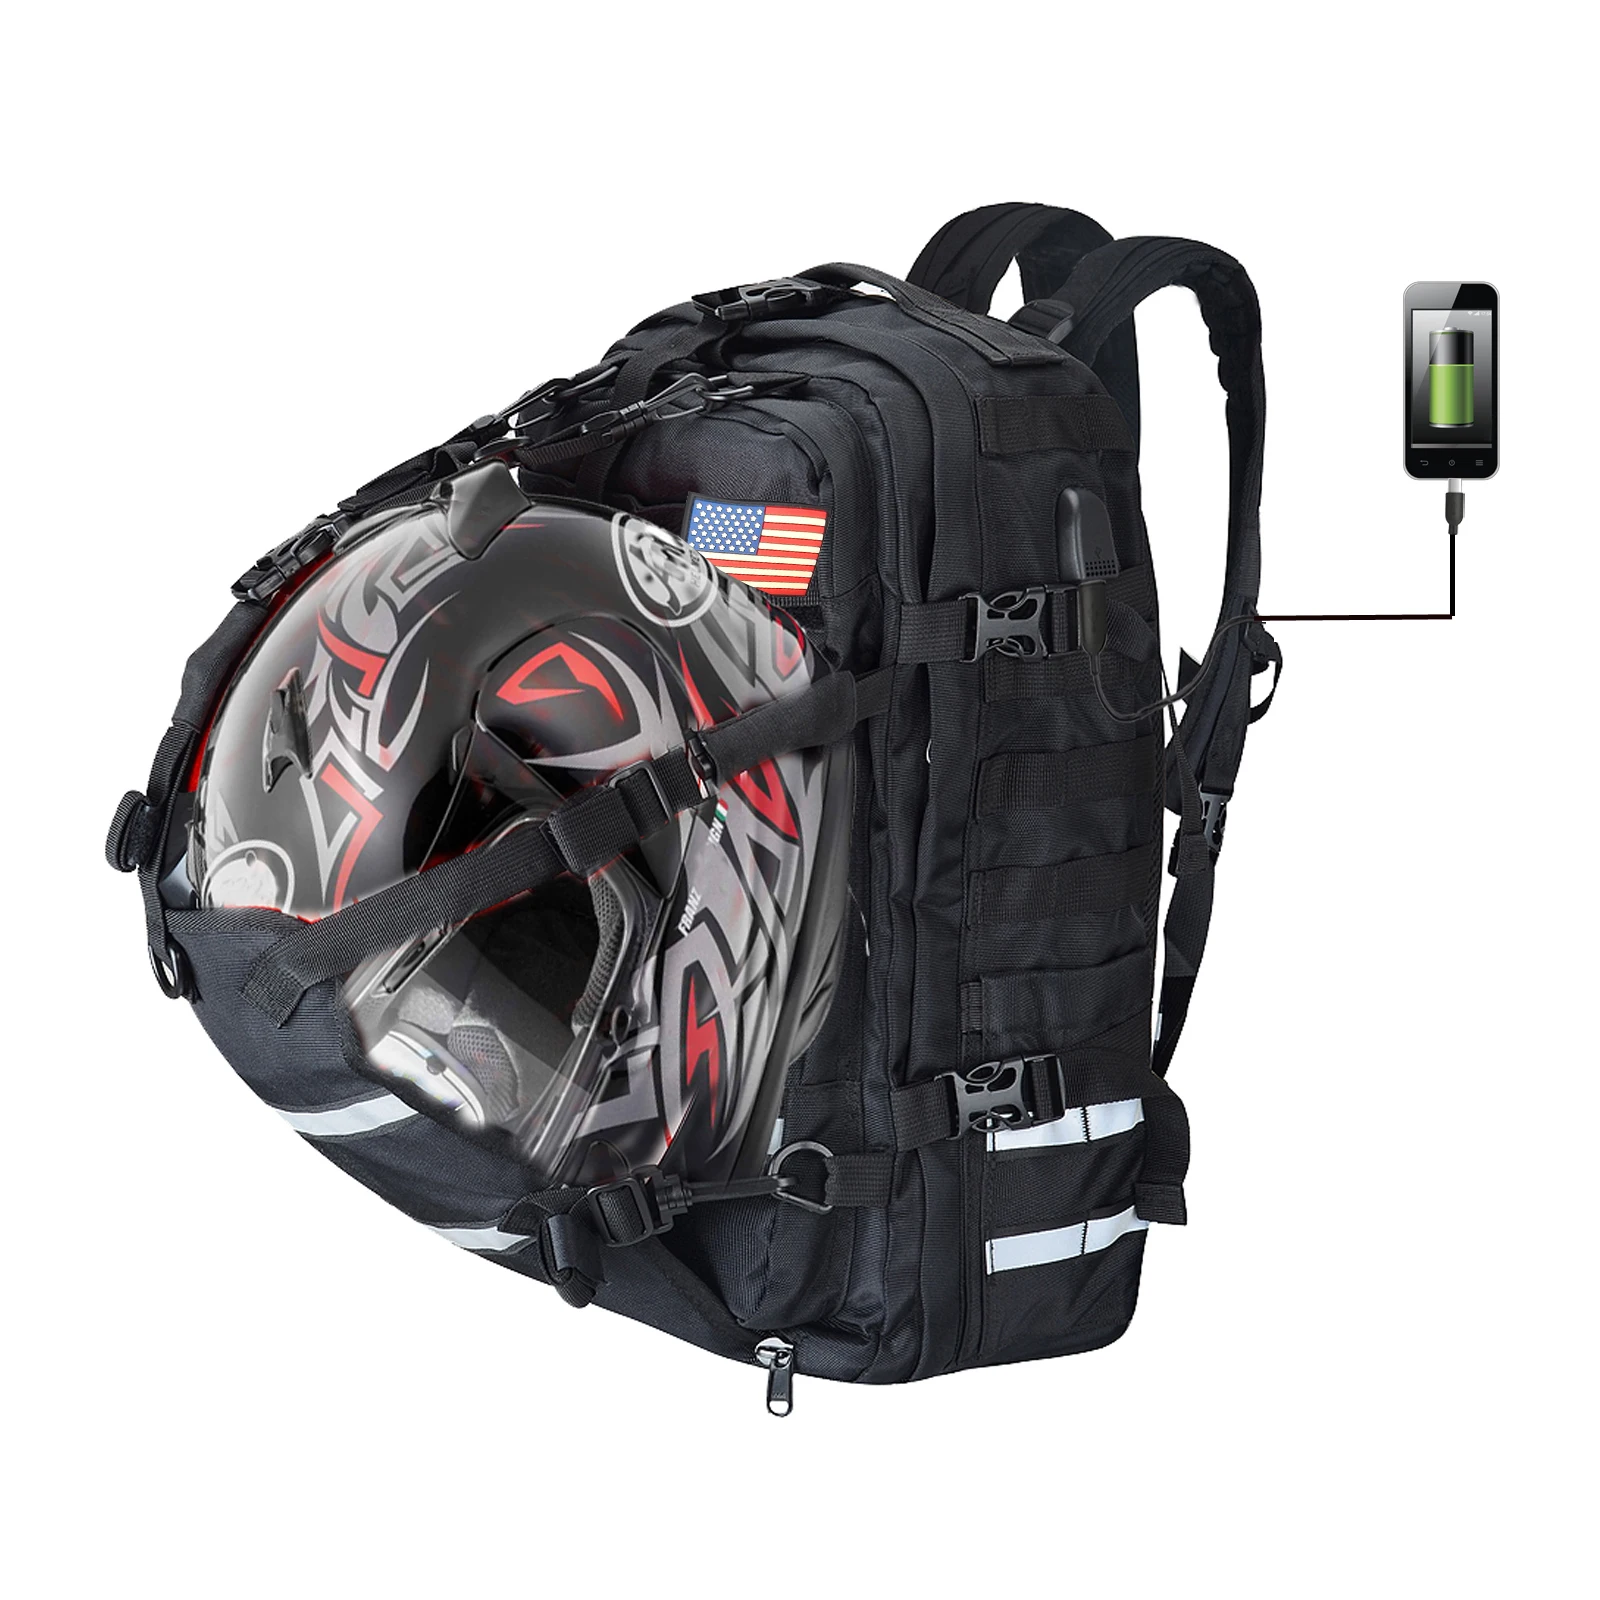 Waterproof Motorcycle sissybar Bag Handbag Backpack Motorcycle Tail Bags Travel Bag Motorbike Sport Luggage Rear Seat Rider Bag